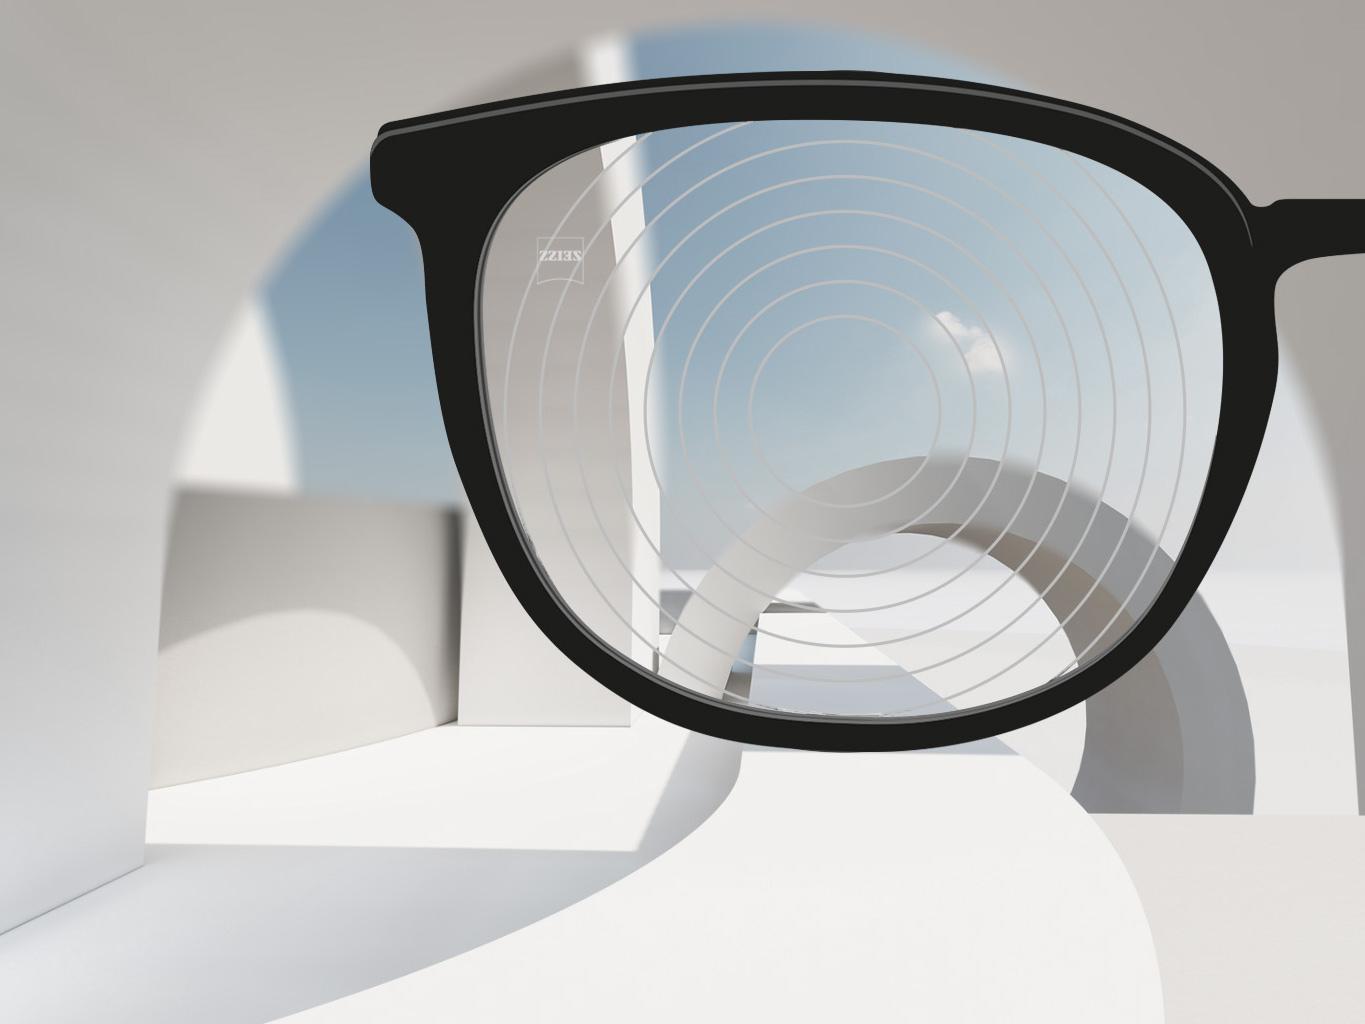 Imagem ampliada de uma armação preta e uma lente de gerenciamento de miopia ZEISS, com círculos concêntricos na sua superfície da lente. 